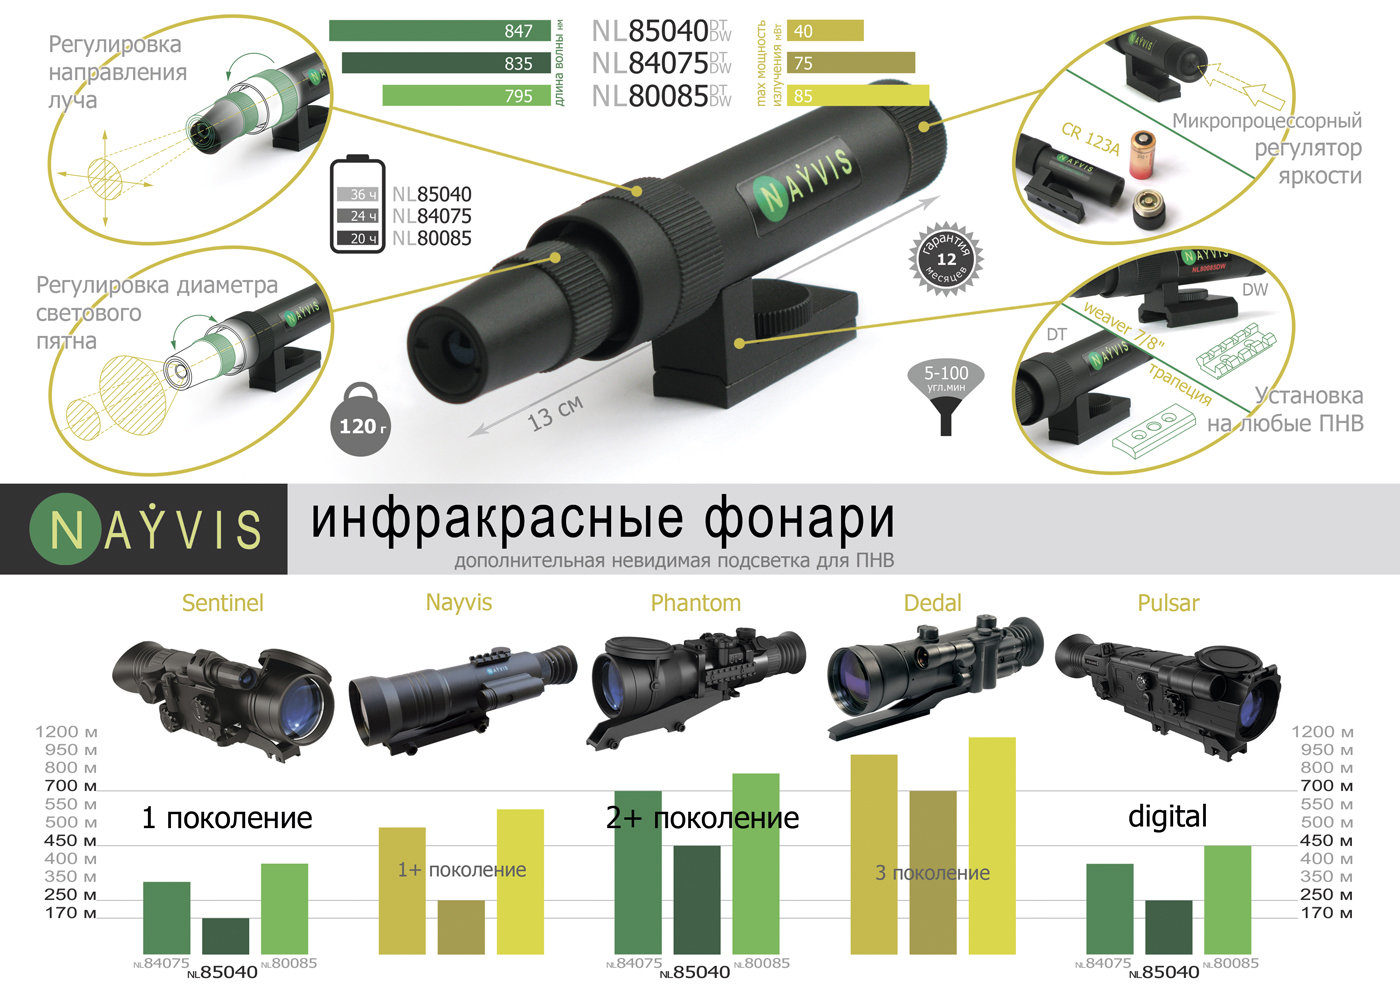 ИК фонарь NL84075DT (835) трапеция купить по оптимальной цене,  доставка по России, гарантия качества